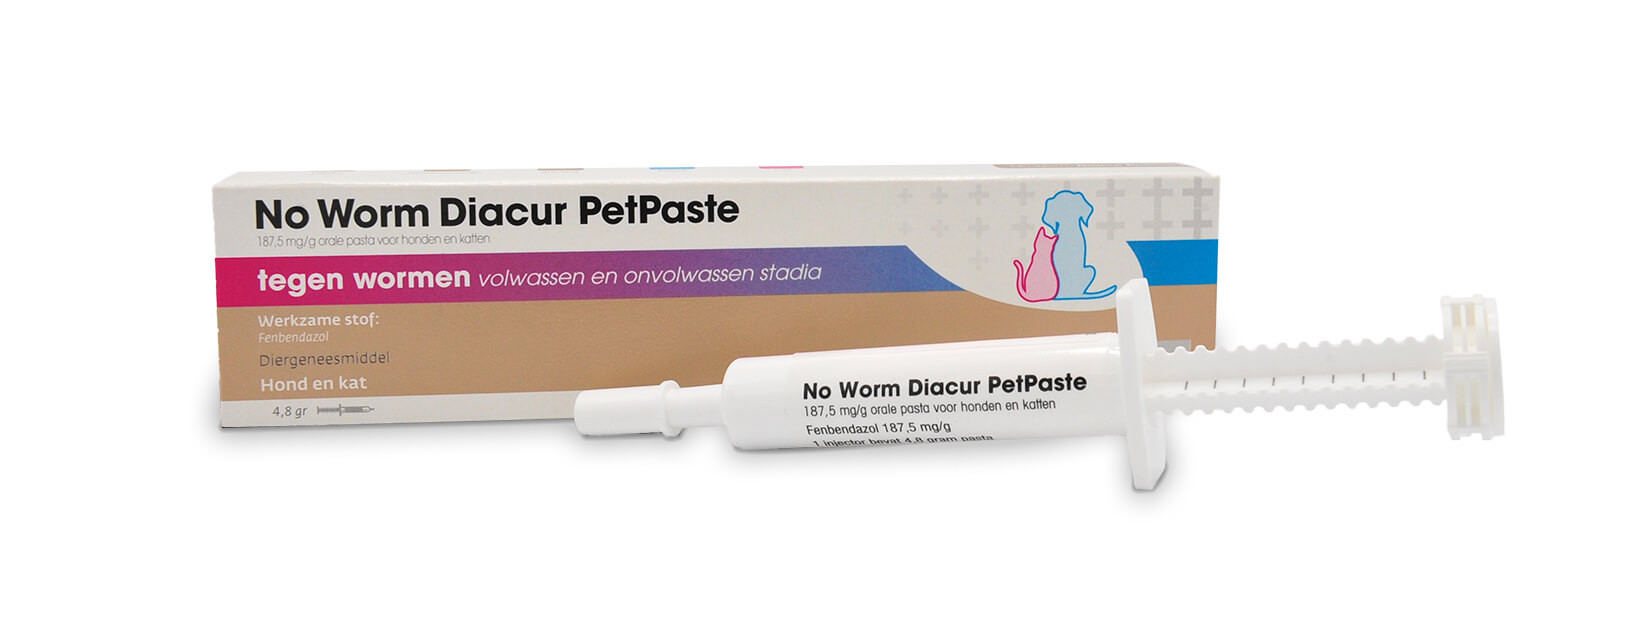 No Worm Diacur PetPaste tegen wormen hond en kat